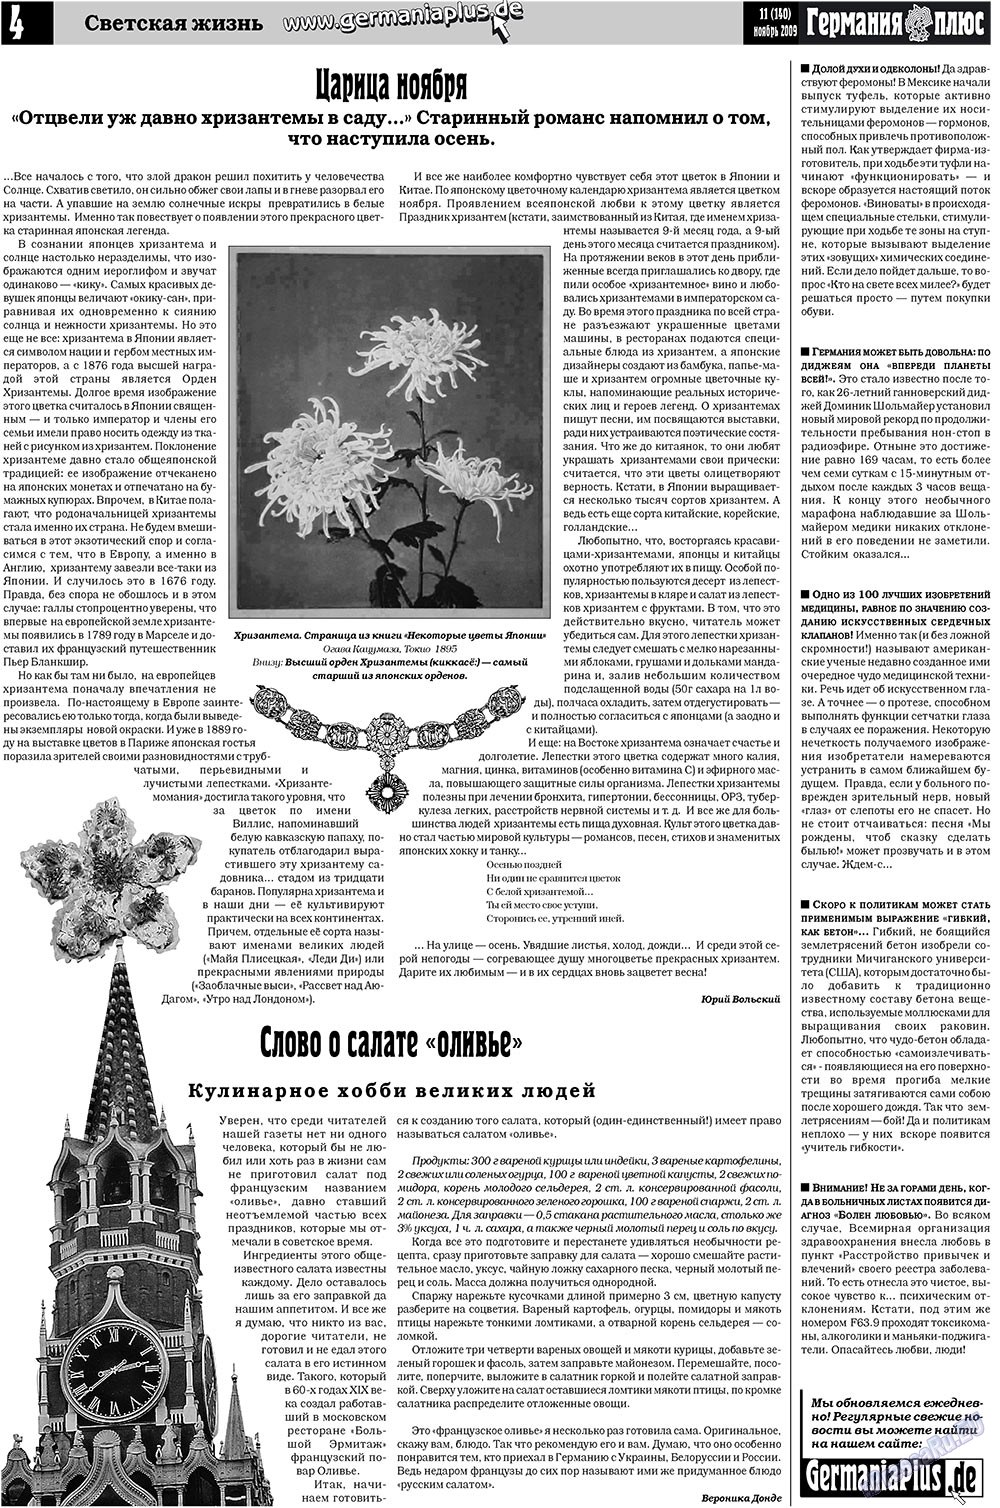 Германия плюс (газета). 2009 год, номер 11, стр. 4